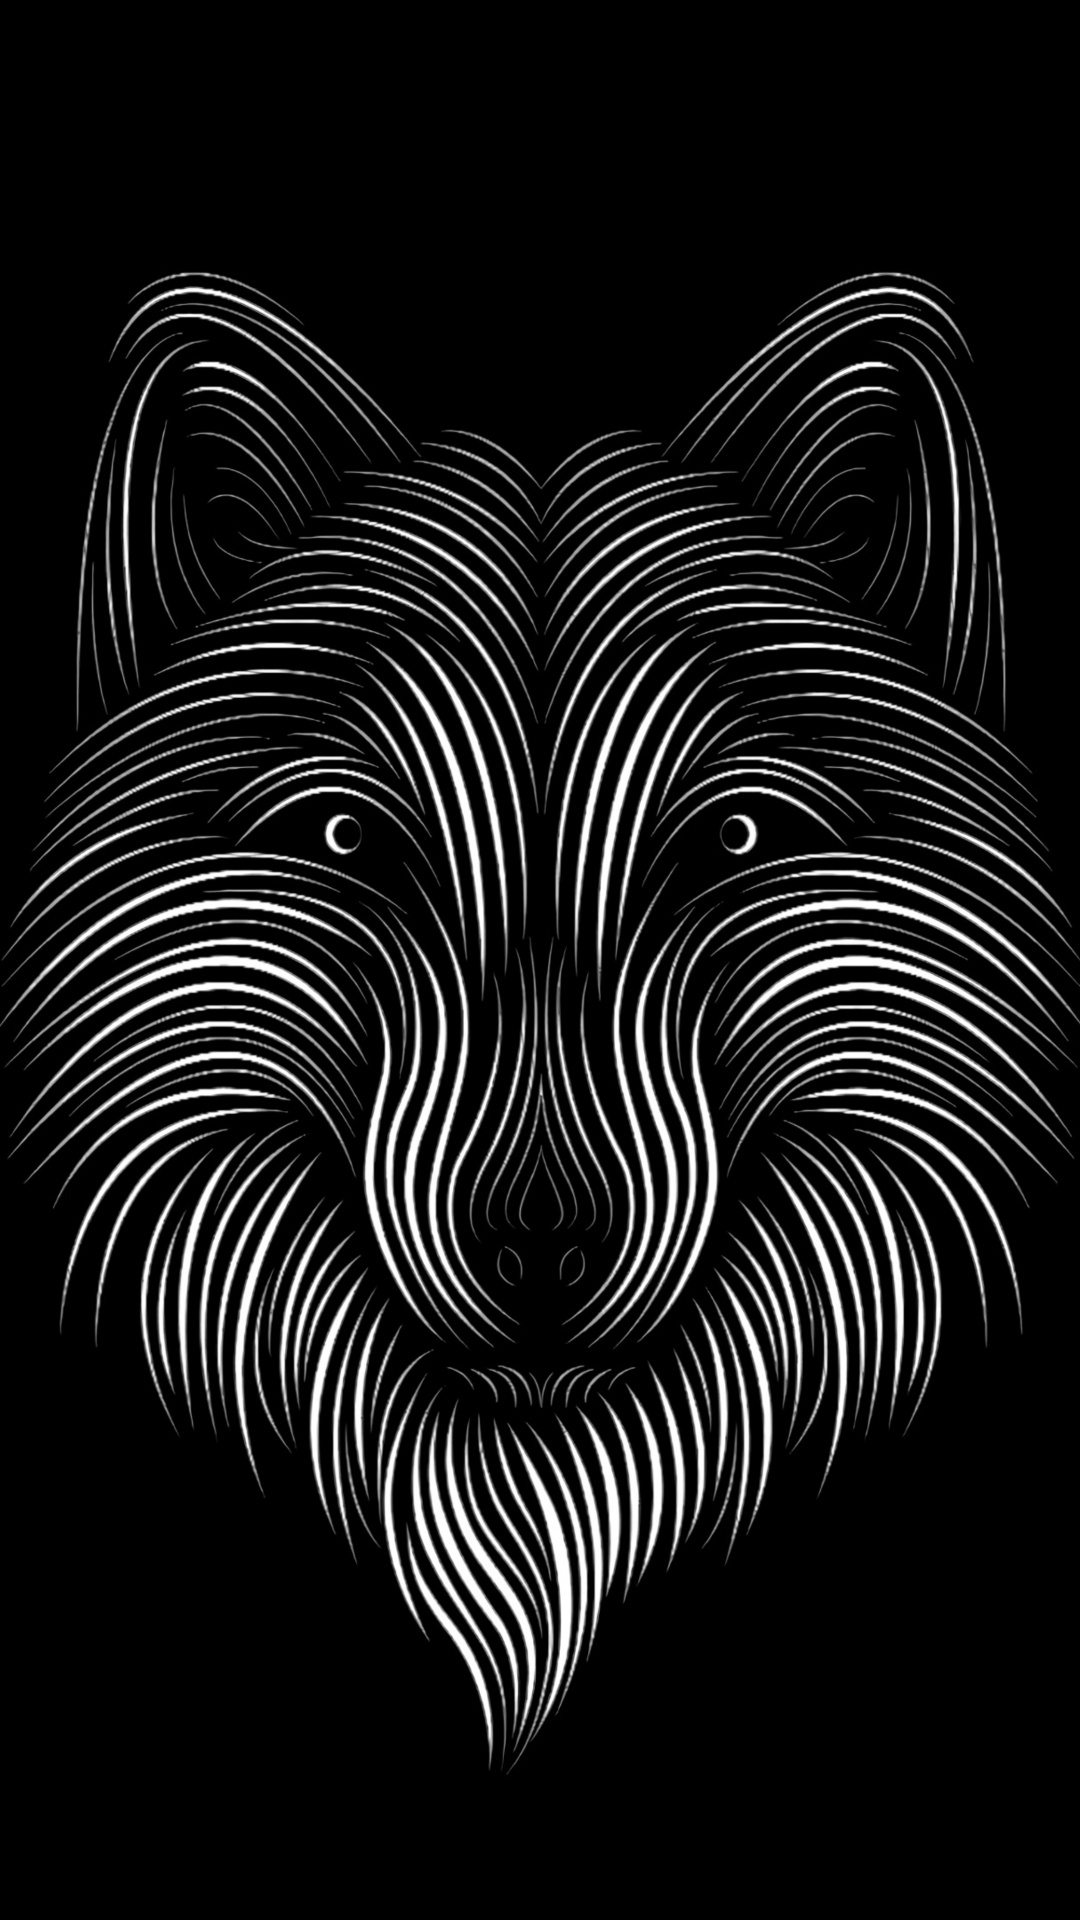 艺术, 野生动物, 对称, 胡须, 黑色和白色的 壁纸 1080x1920 允许